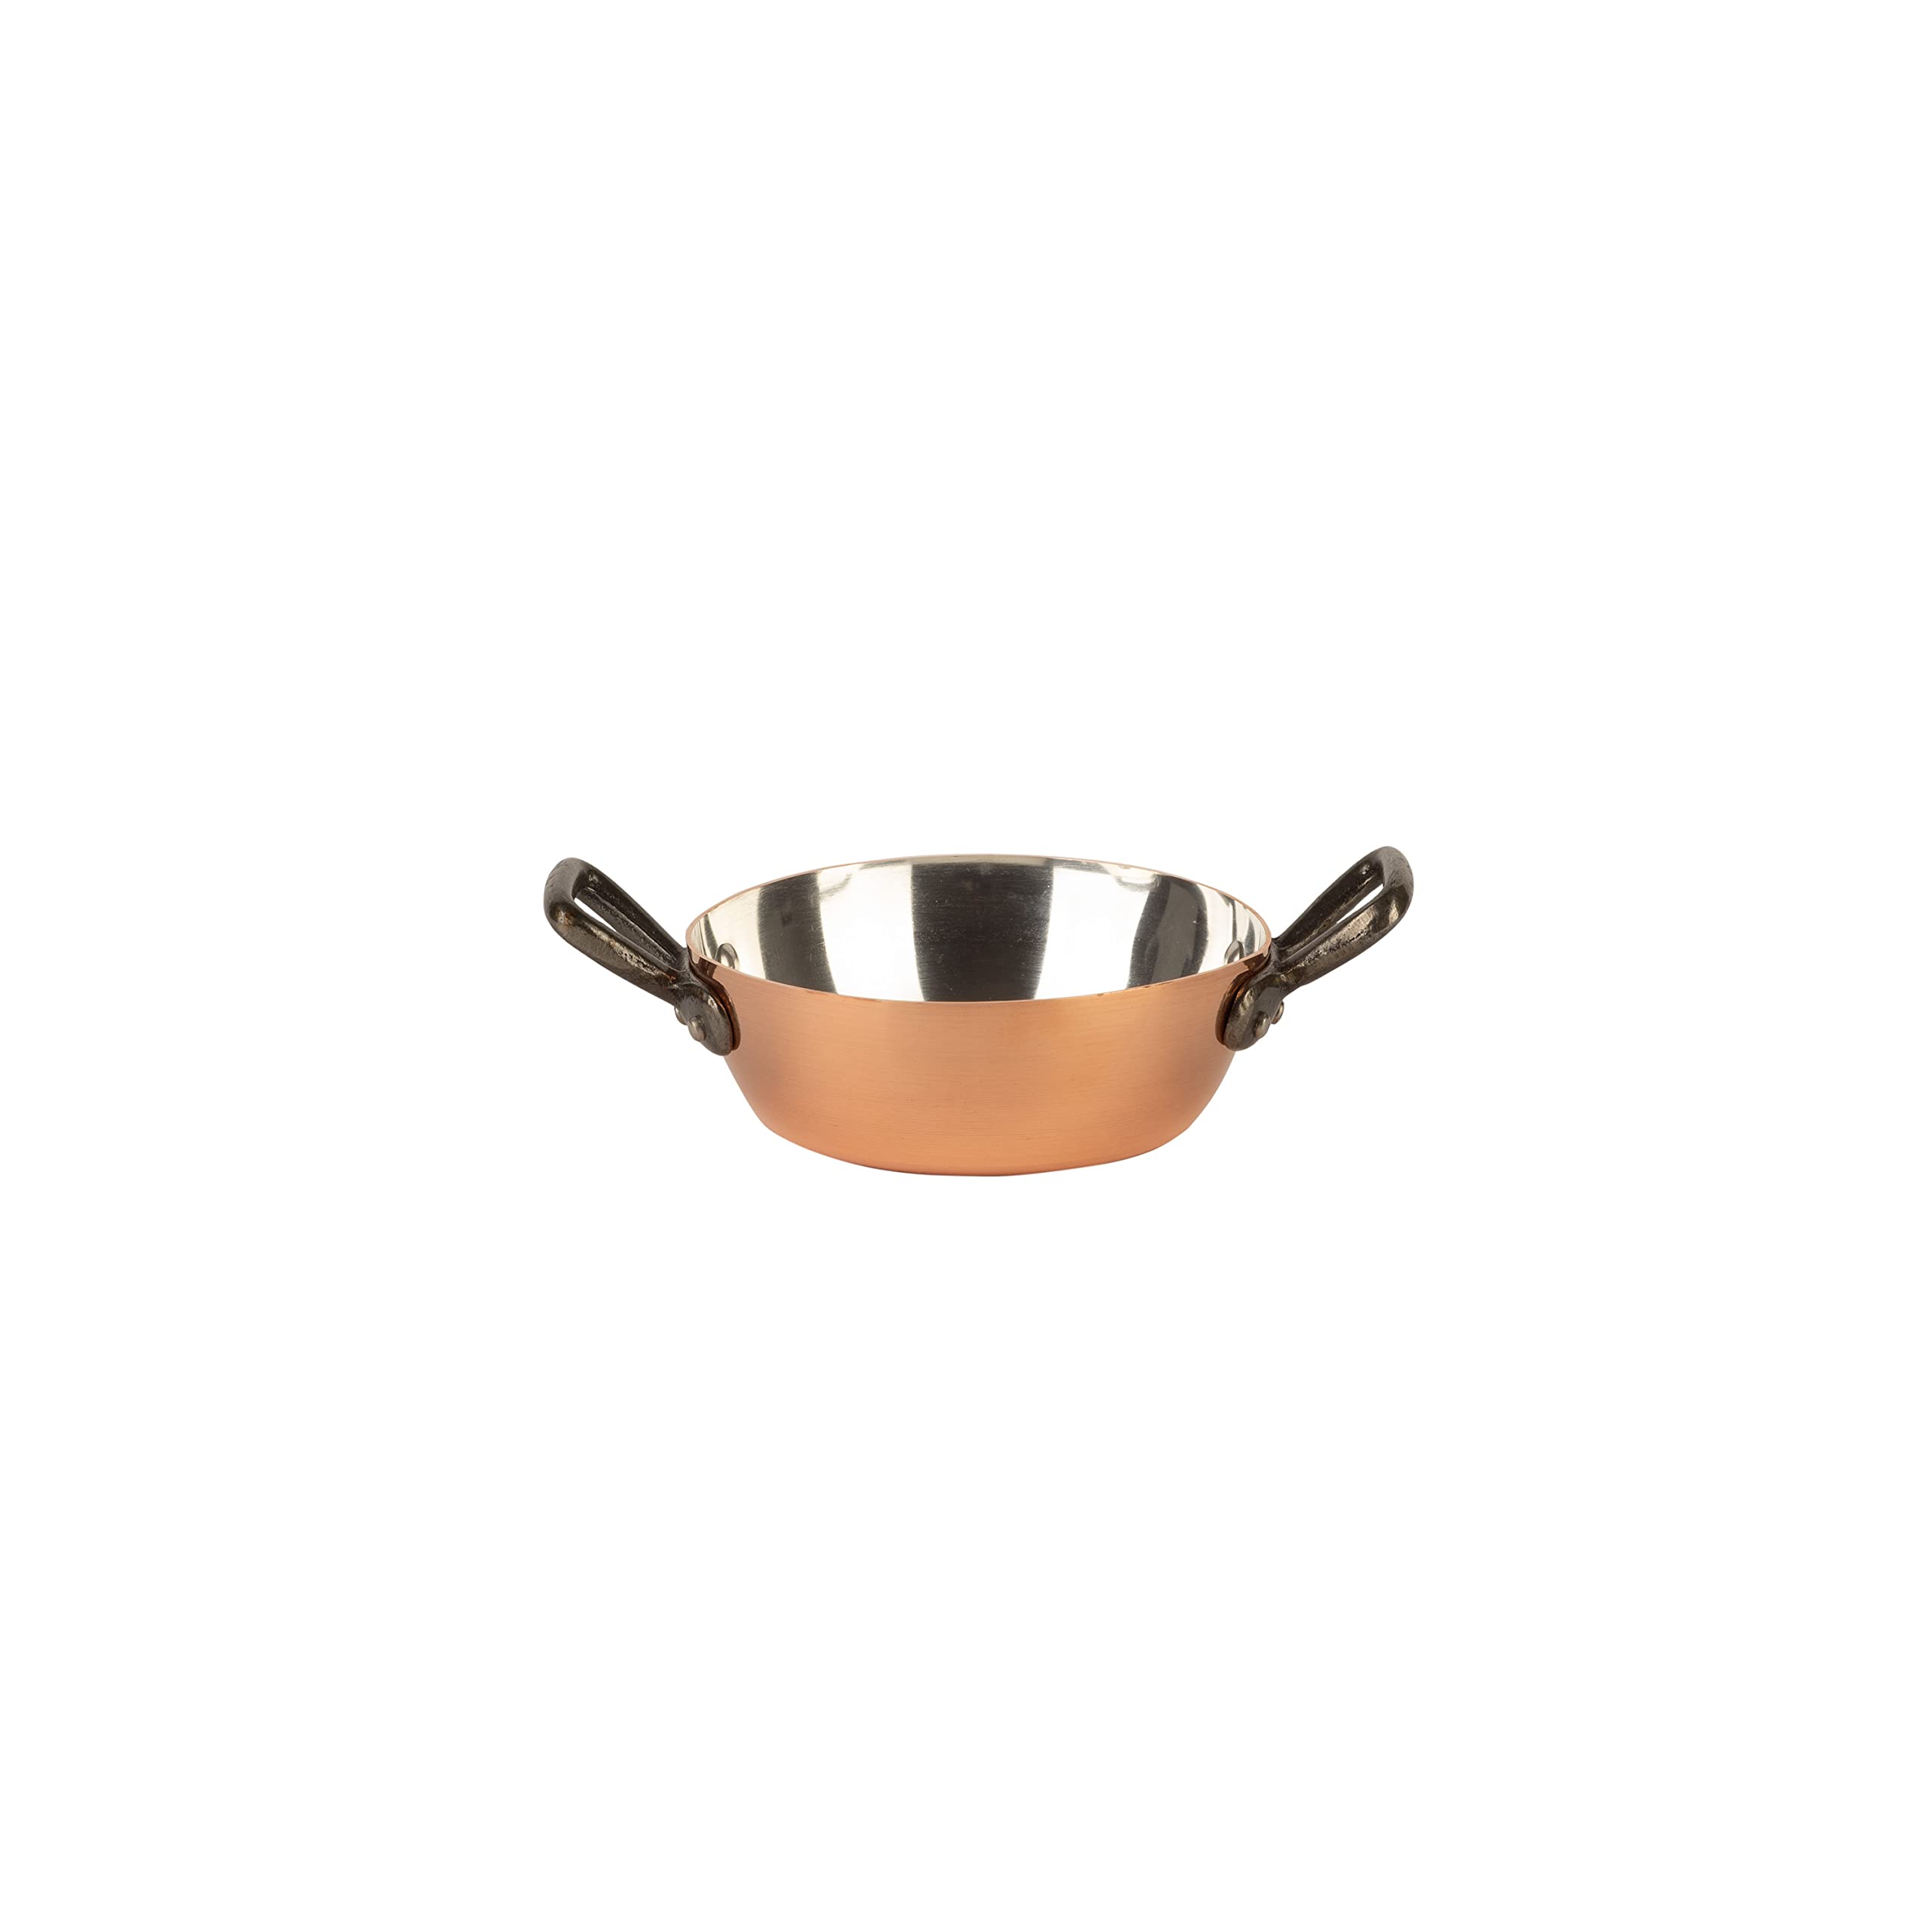 Cuisine Romefort | Kupferpfanne verzinnt mit 2 Gusseisengriffen Ø 16 cm | traditionelle Bratpfanne aus massivem Kupfer mit Zinnbeschichtung | Pfanne aus Frankreich (16 cm mit 2 Griffen)